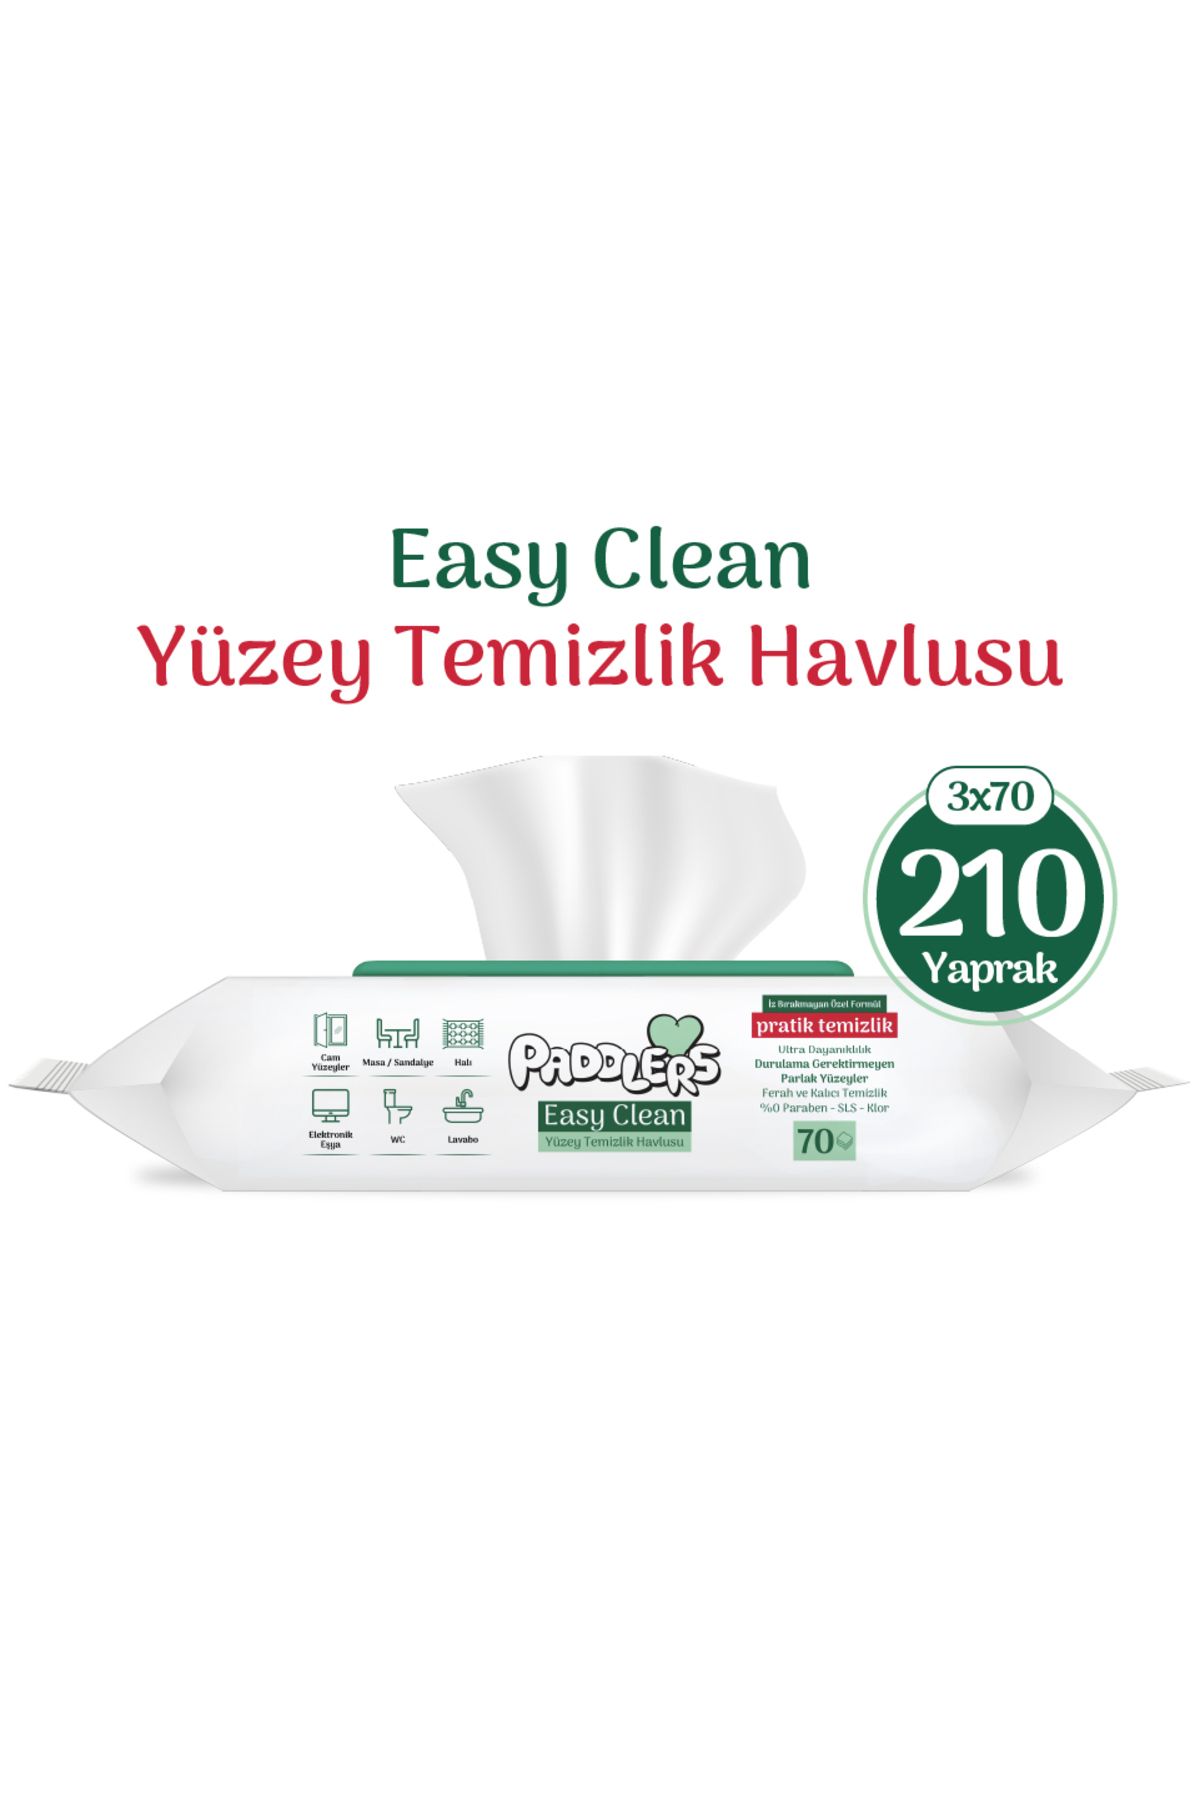 Paddlers Easy Clean Beyaz Sabun Katkılı Yüzey temizlik Havlusu 3x70 (210 Yaprak)